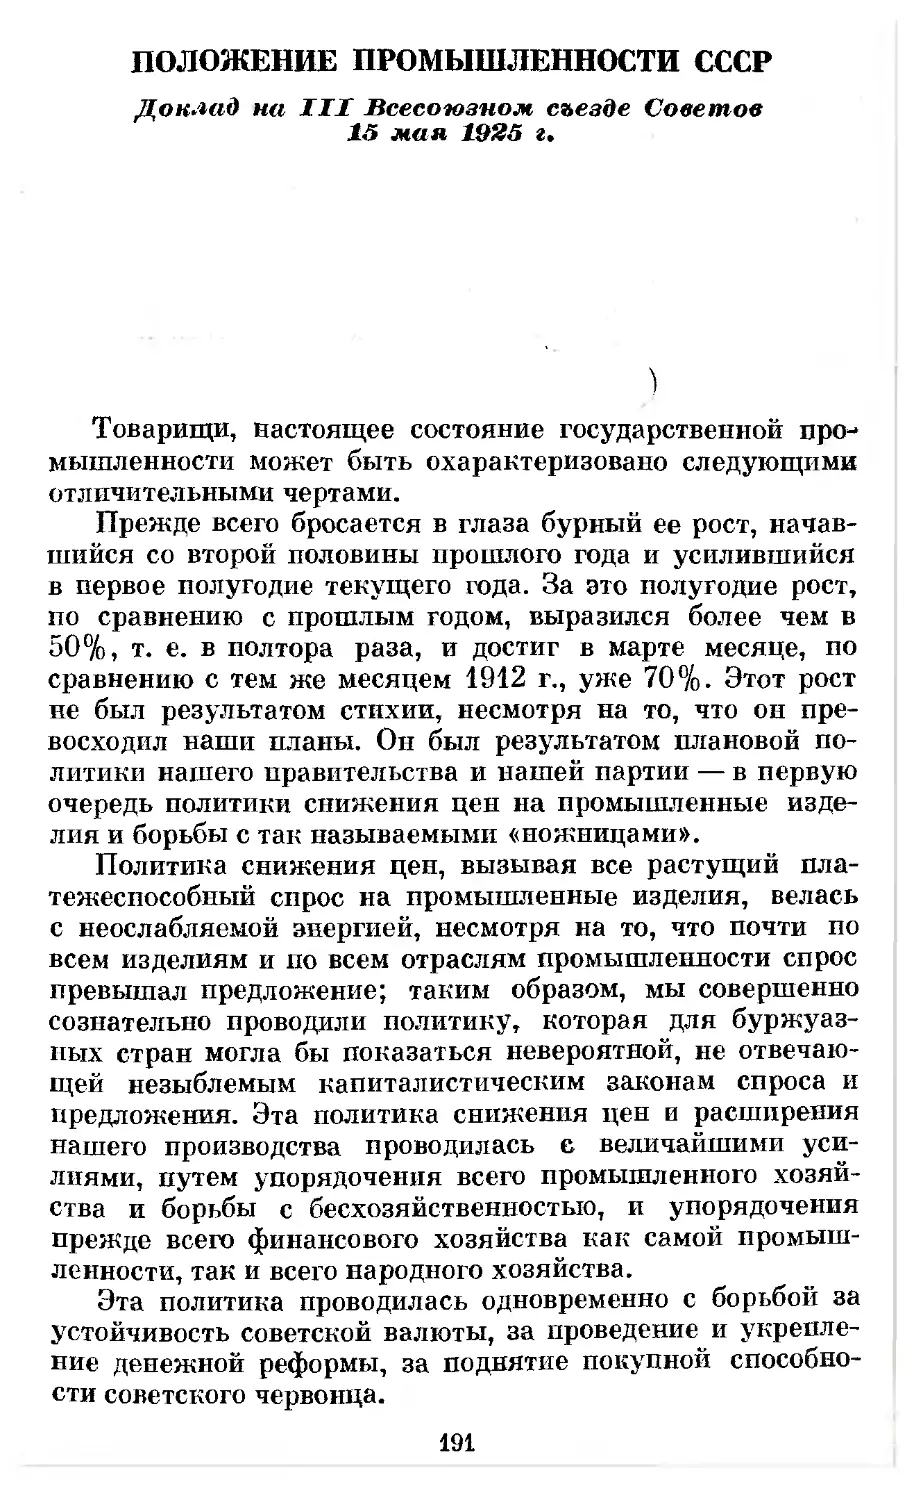 Положение промышленности СССР. Доклад на III Всесоюзном съезде Советов 15 мая 1925 г